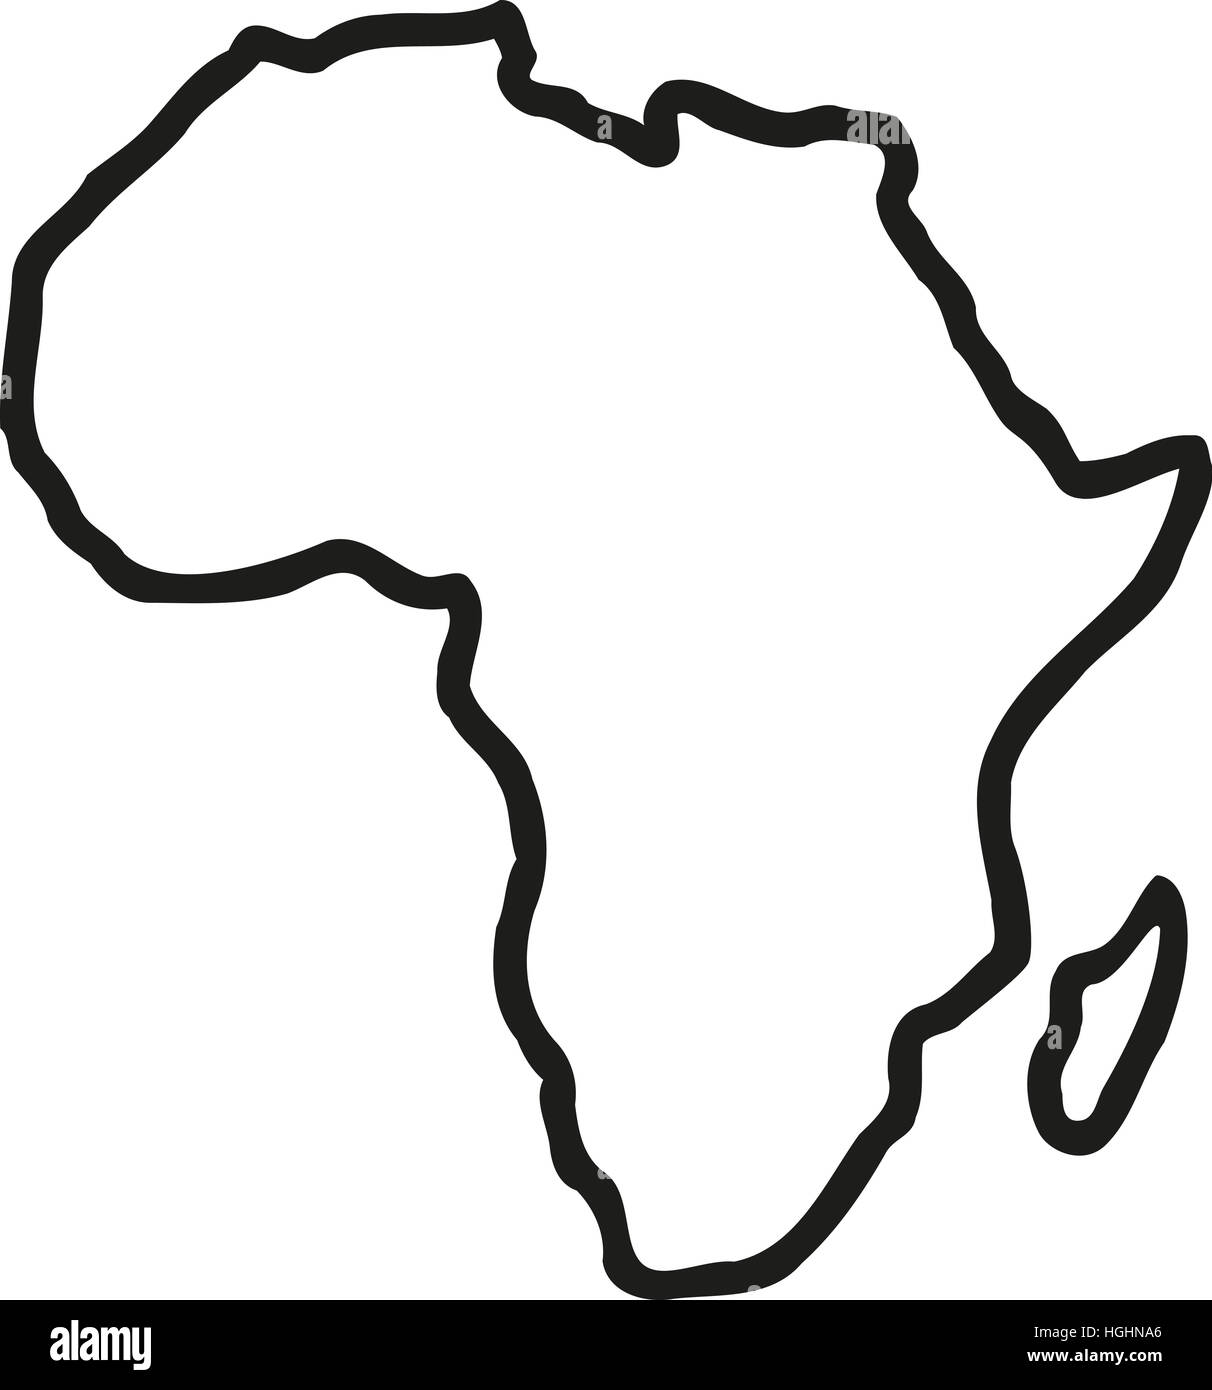 Контур материка Африка